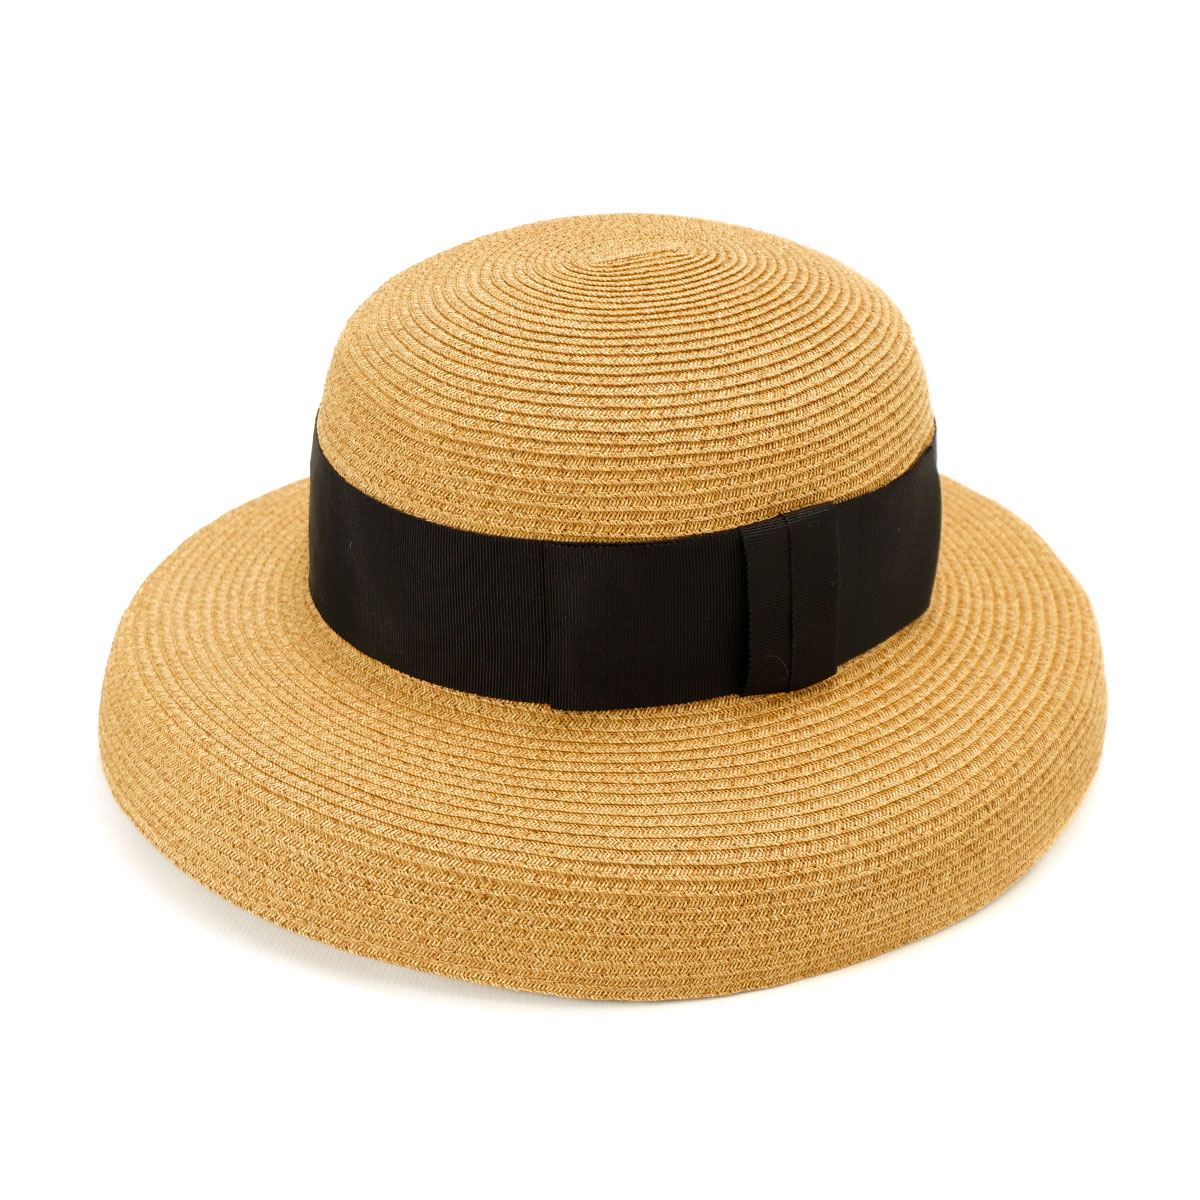 ブレードカサブランカ 日本製 帽子 レディース 麦わら帽子 UV対策 紫外線対策 サイズ調整 つば広...